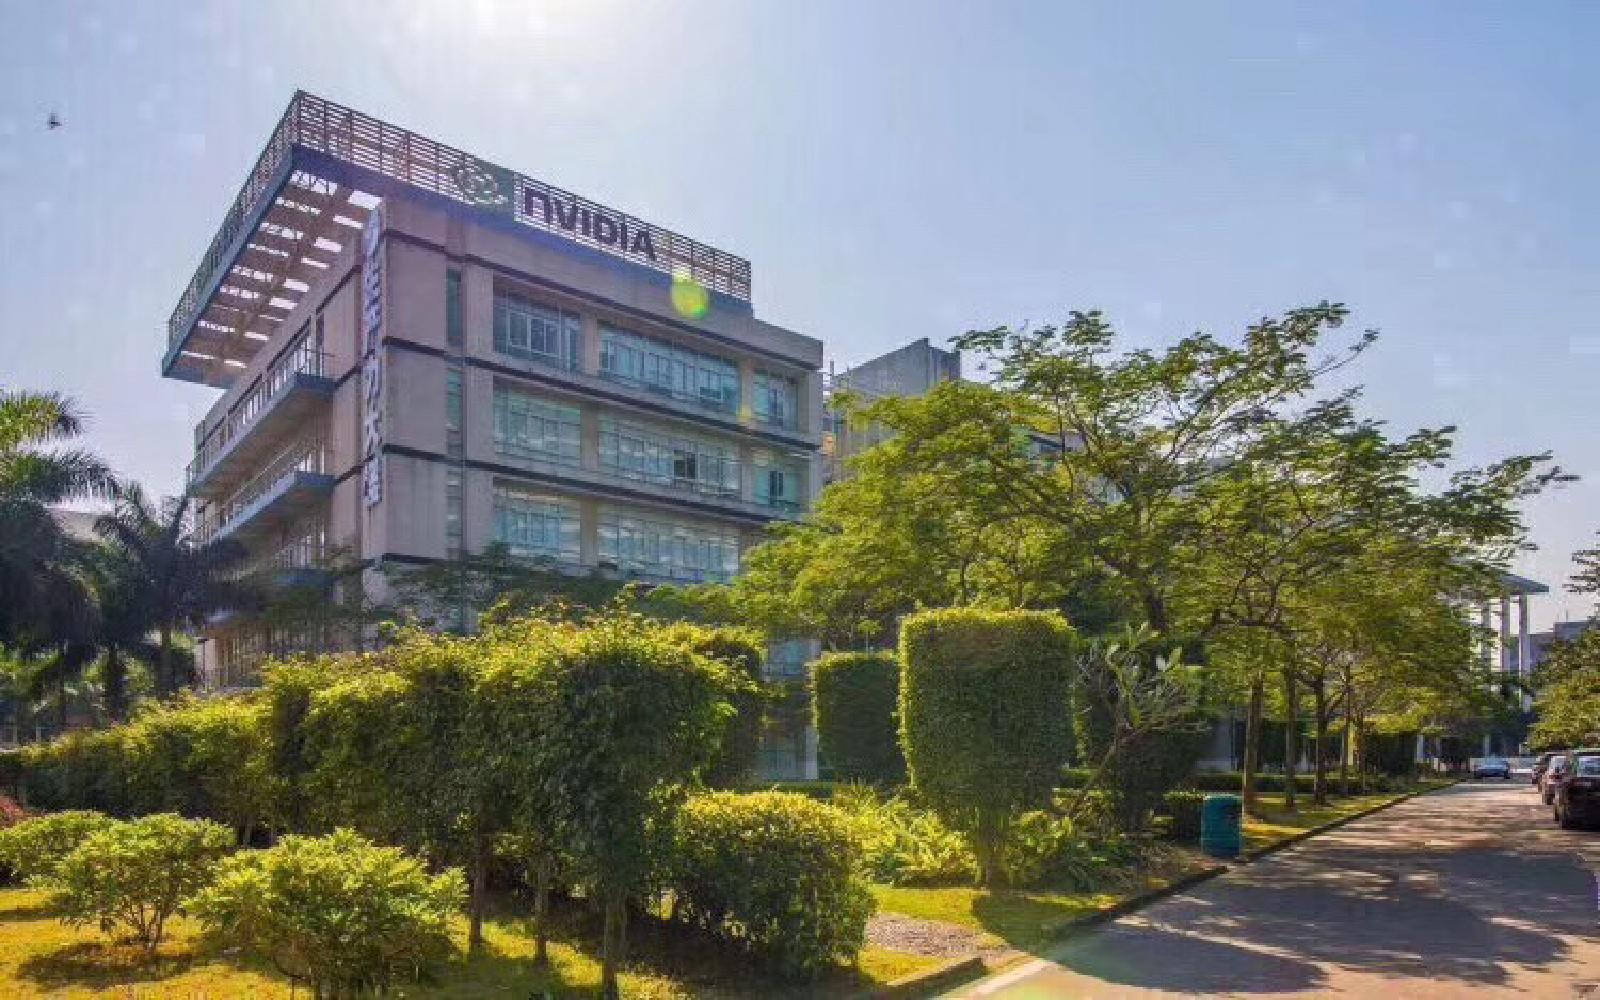 深圳科技工业园生产力大楼写字楼出租138平米简装办公室69元/m².月